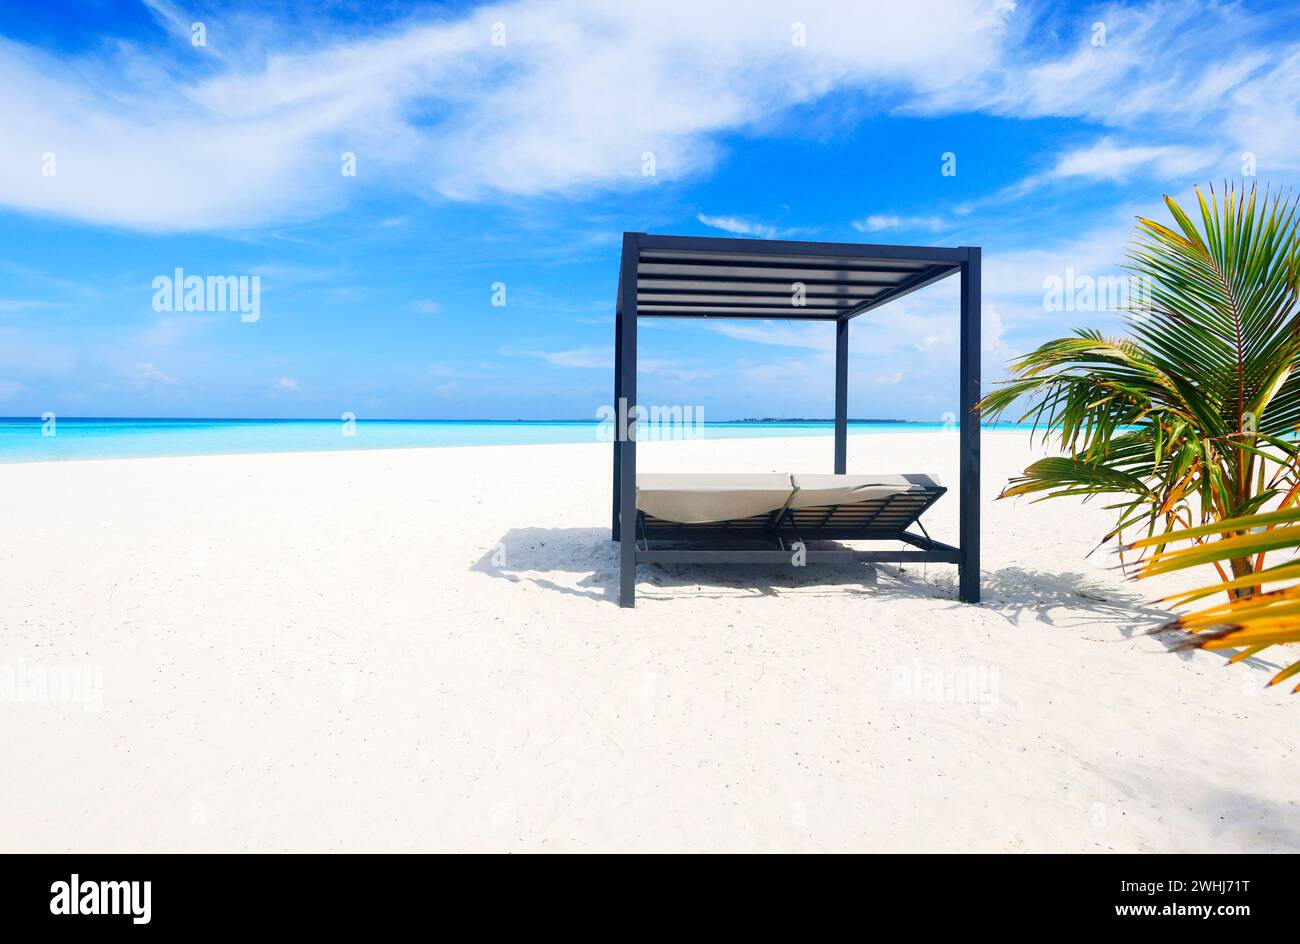 Plage idyllique avec palmiers aux Maldives, océan Indien Banque D'Images